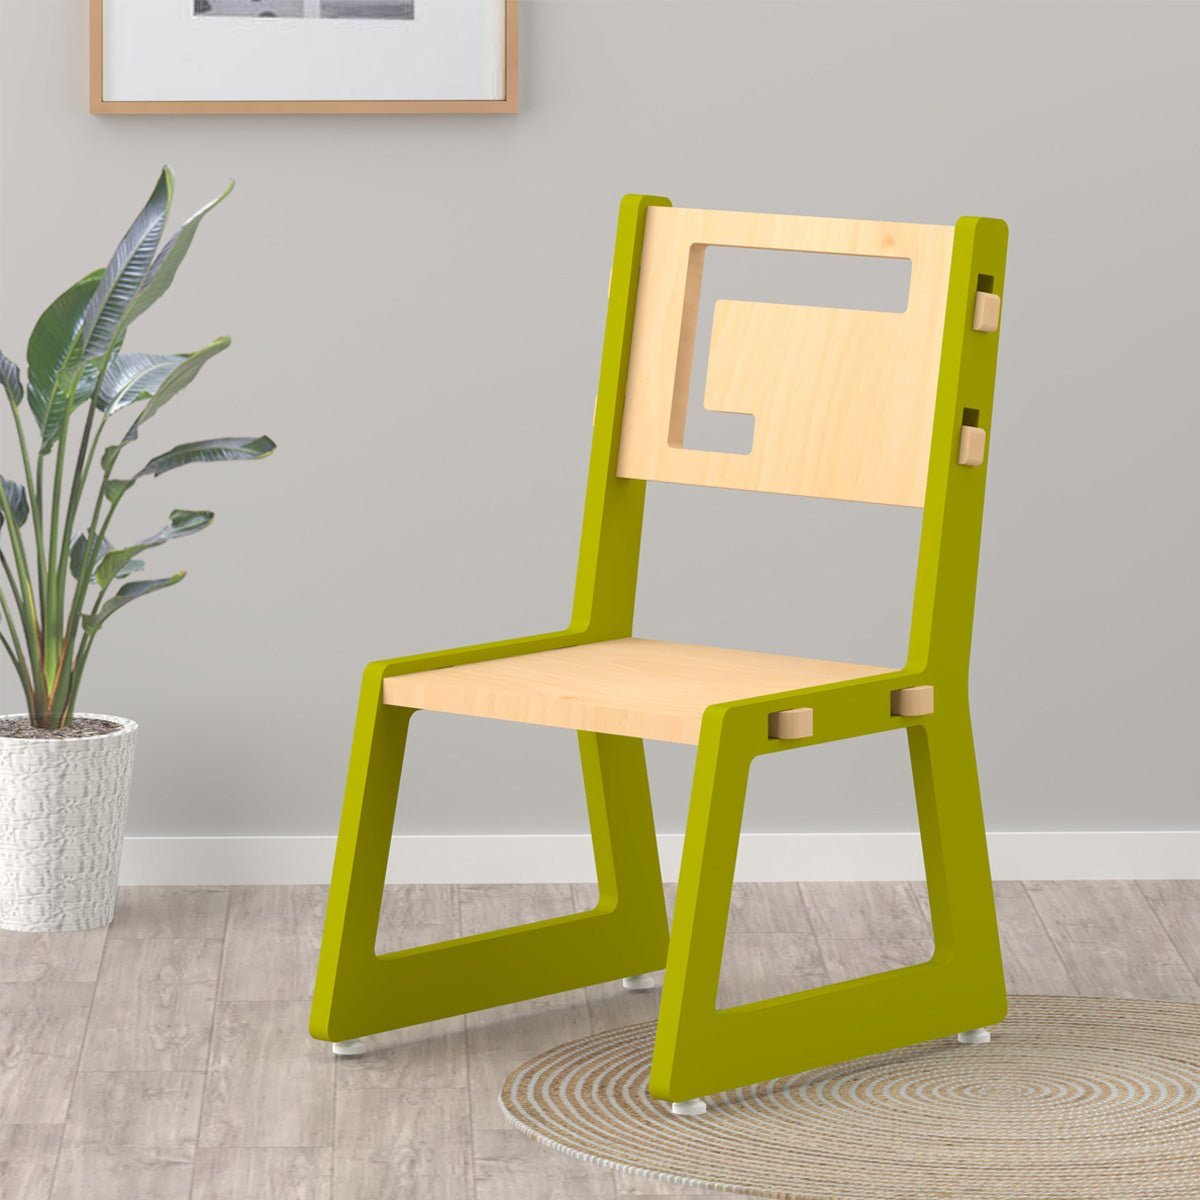 X&Y Blue Apple Chair - Green - FG100918G